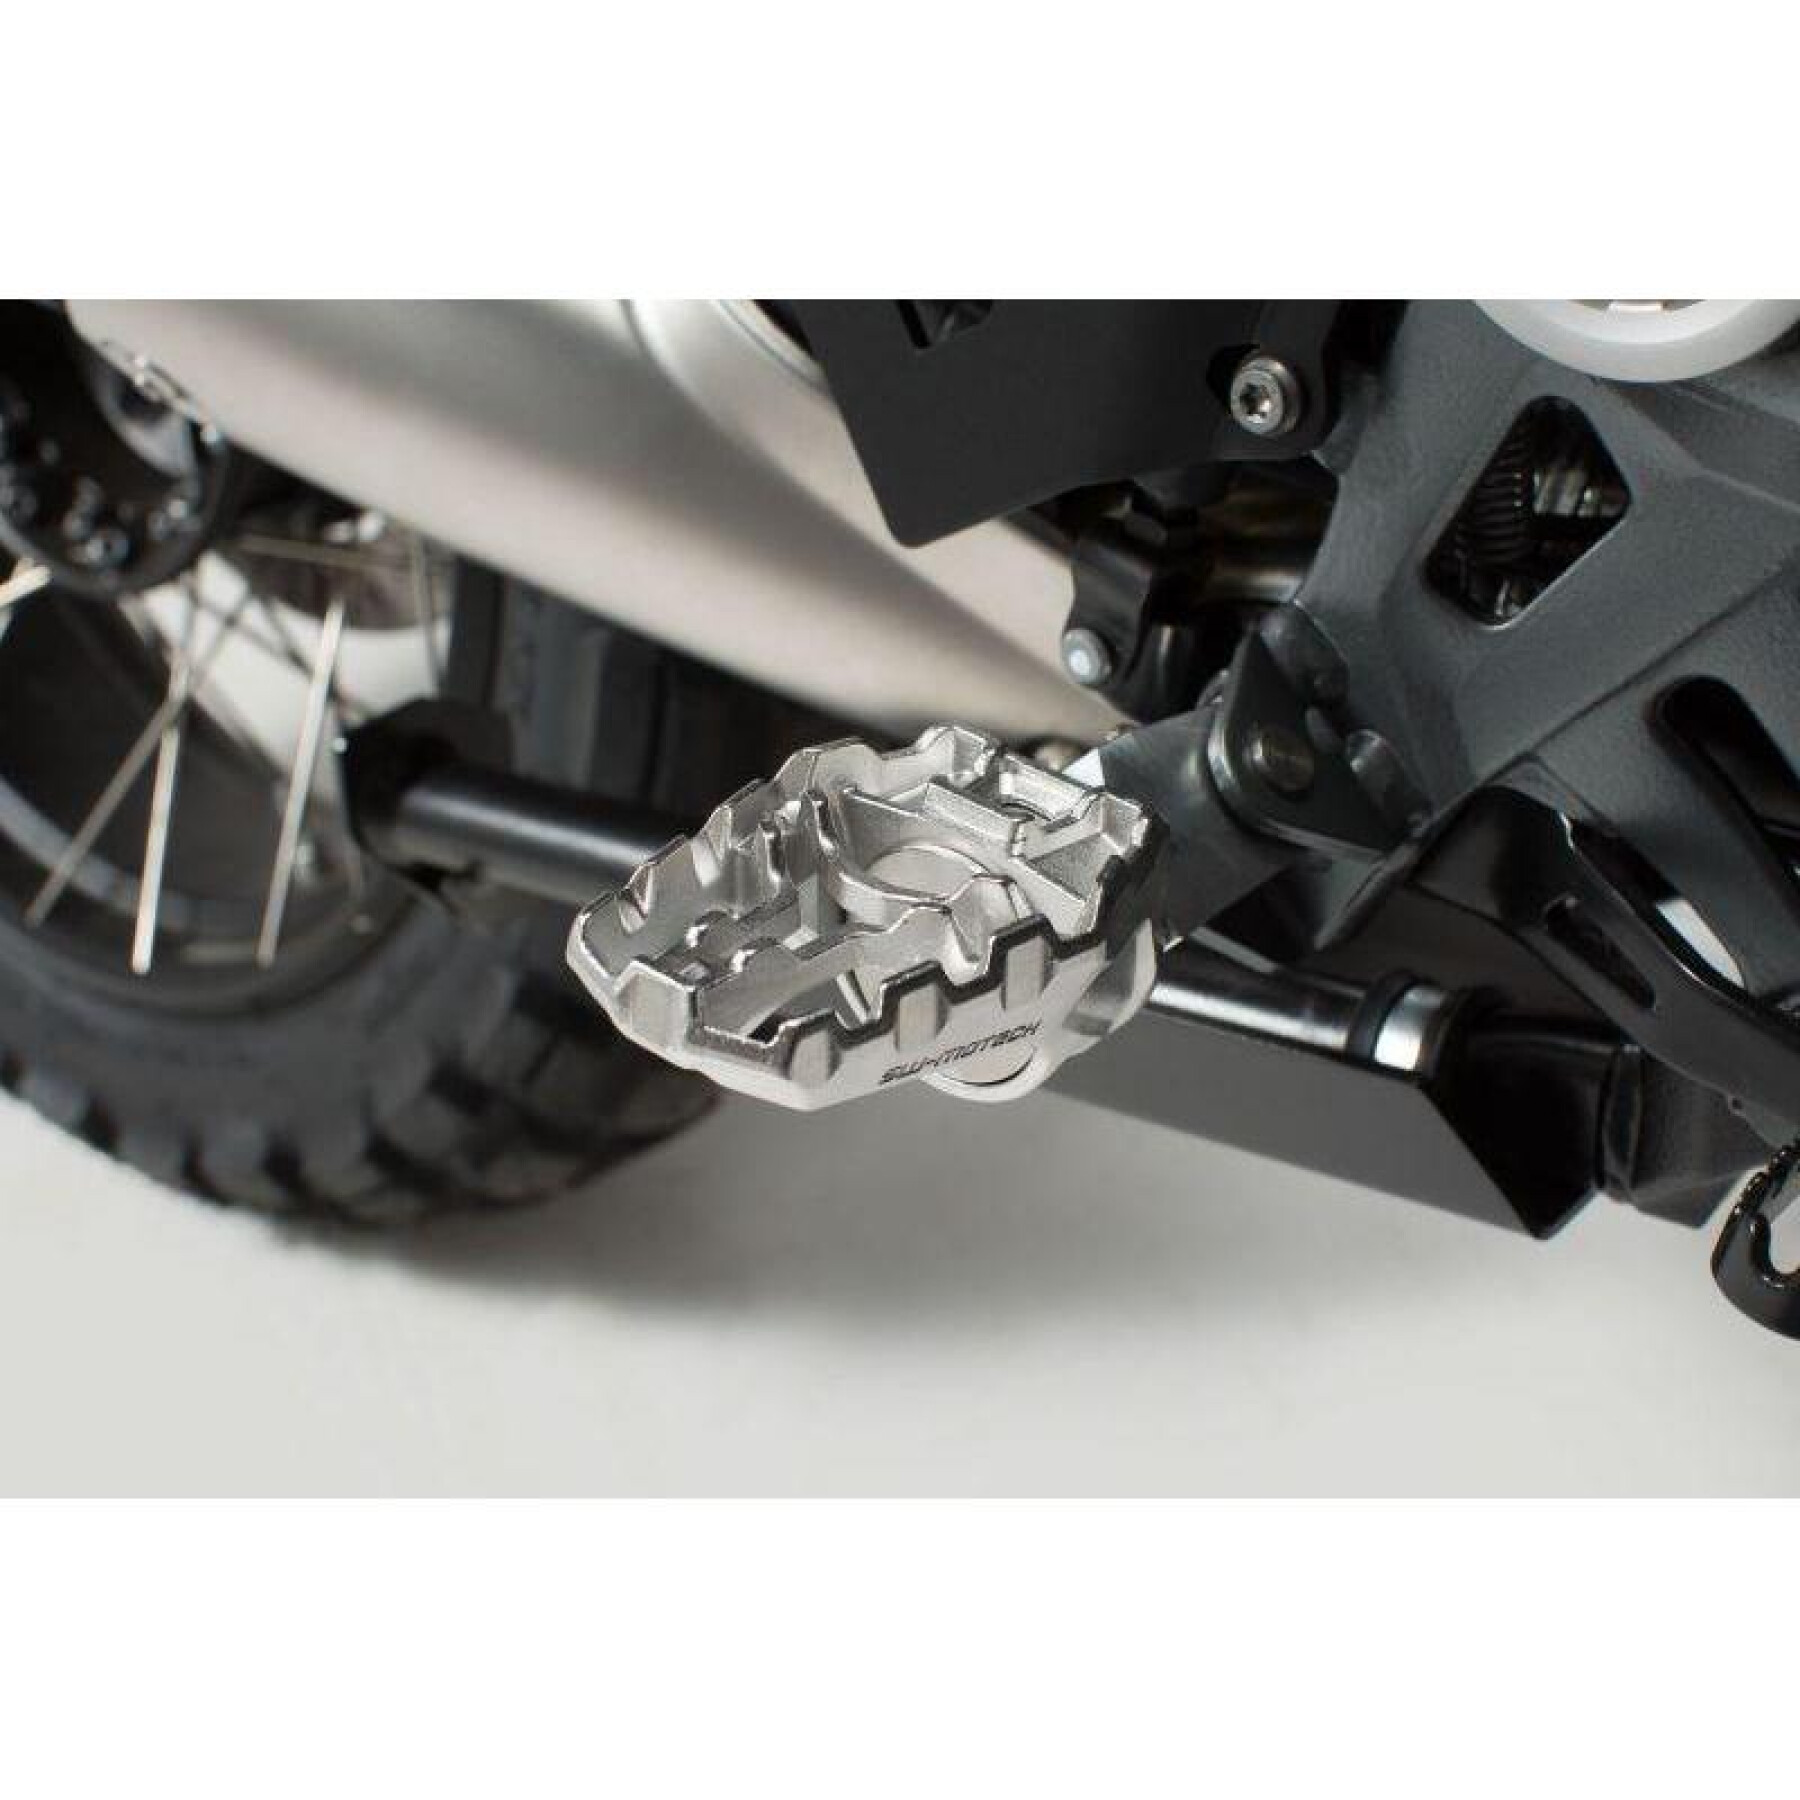 Kit de montagem do apoio para os pés SW-Motech Evo Honda, Suzuki, KTM